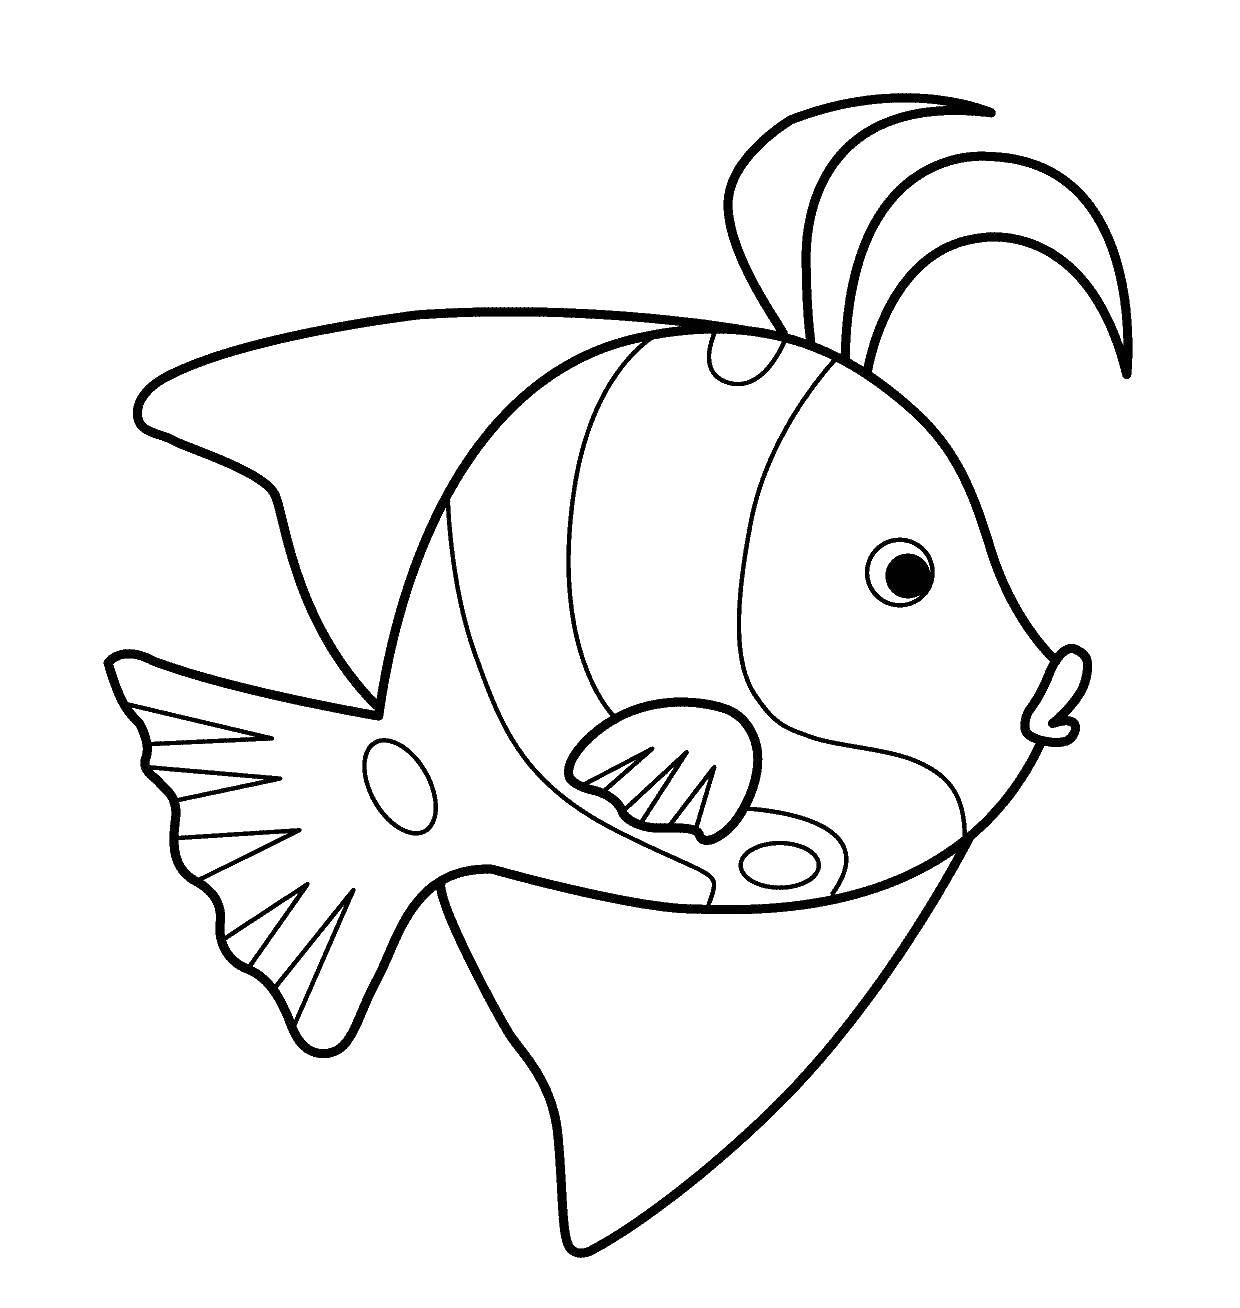 Coloring Fish. Category fish. Tags:  fish.